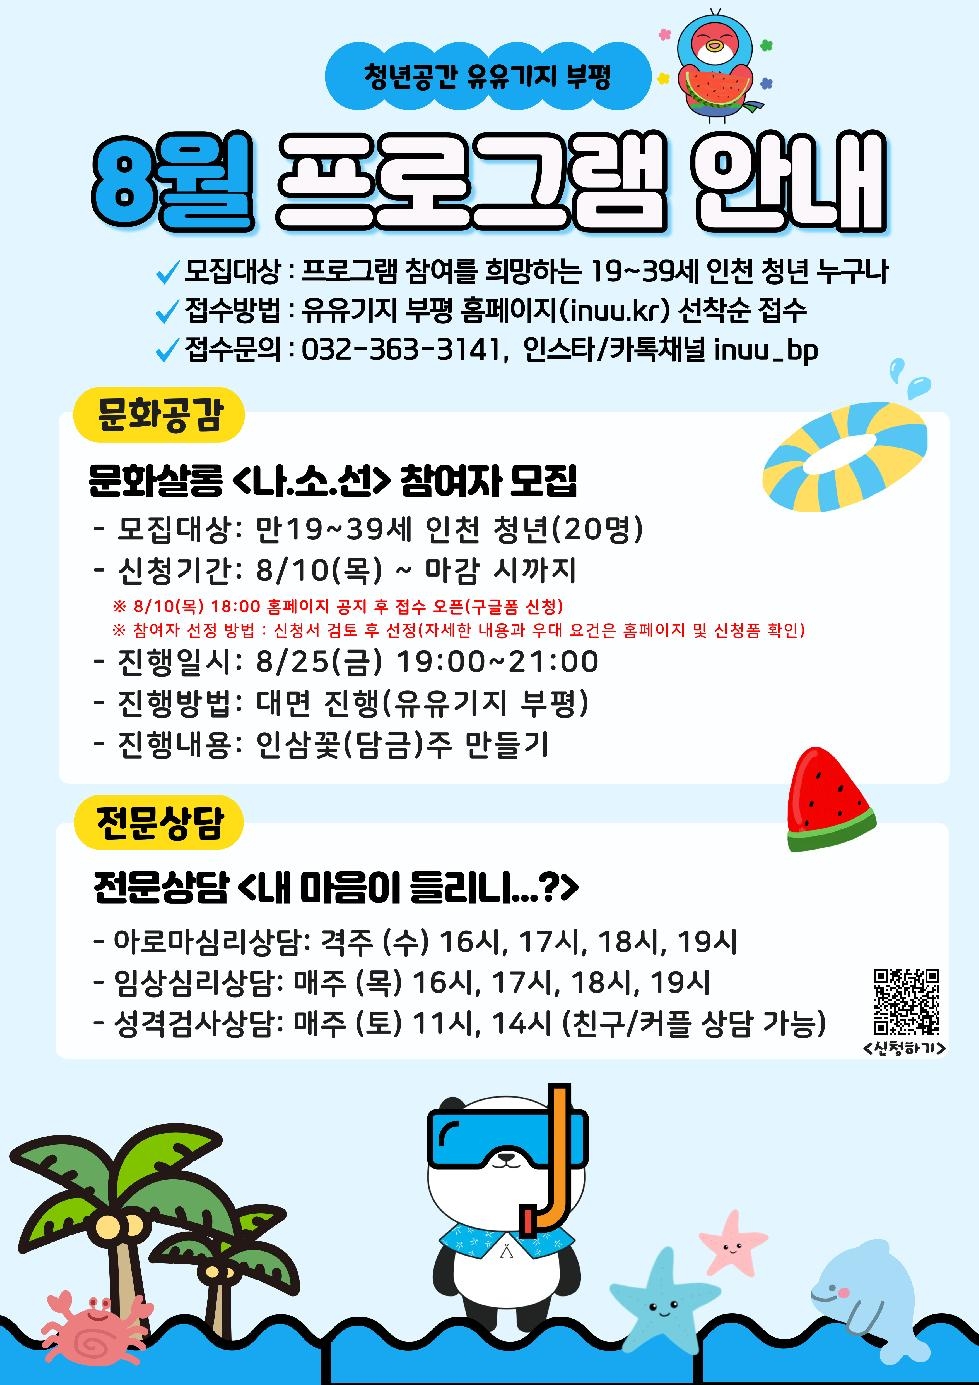 인천 부평구 청년공간 유유기지 부평, 8월 프로그램 참여자 모집